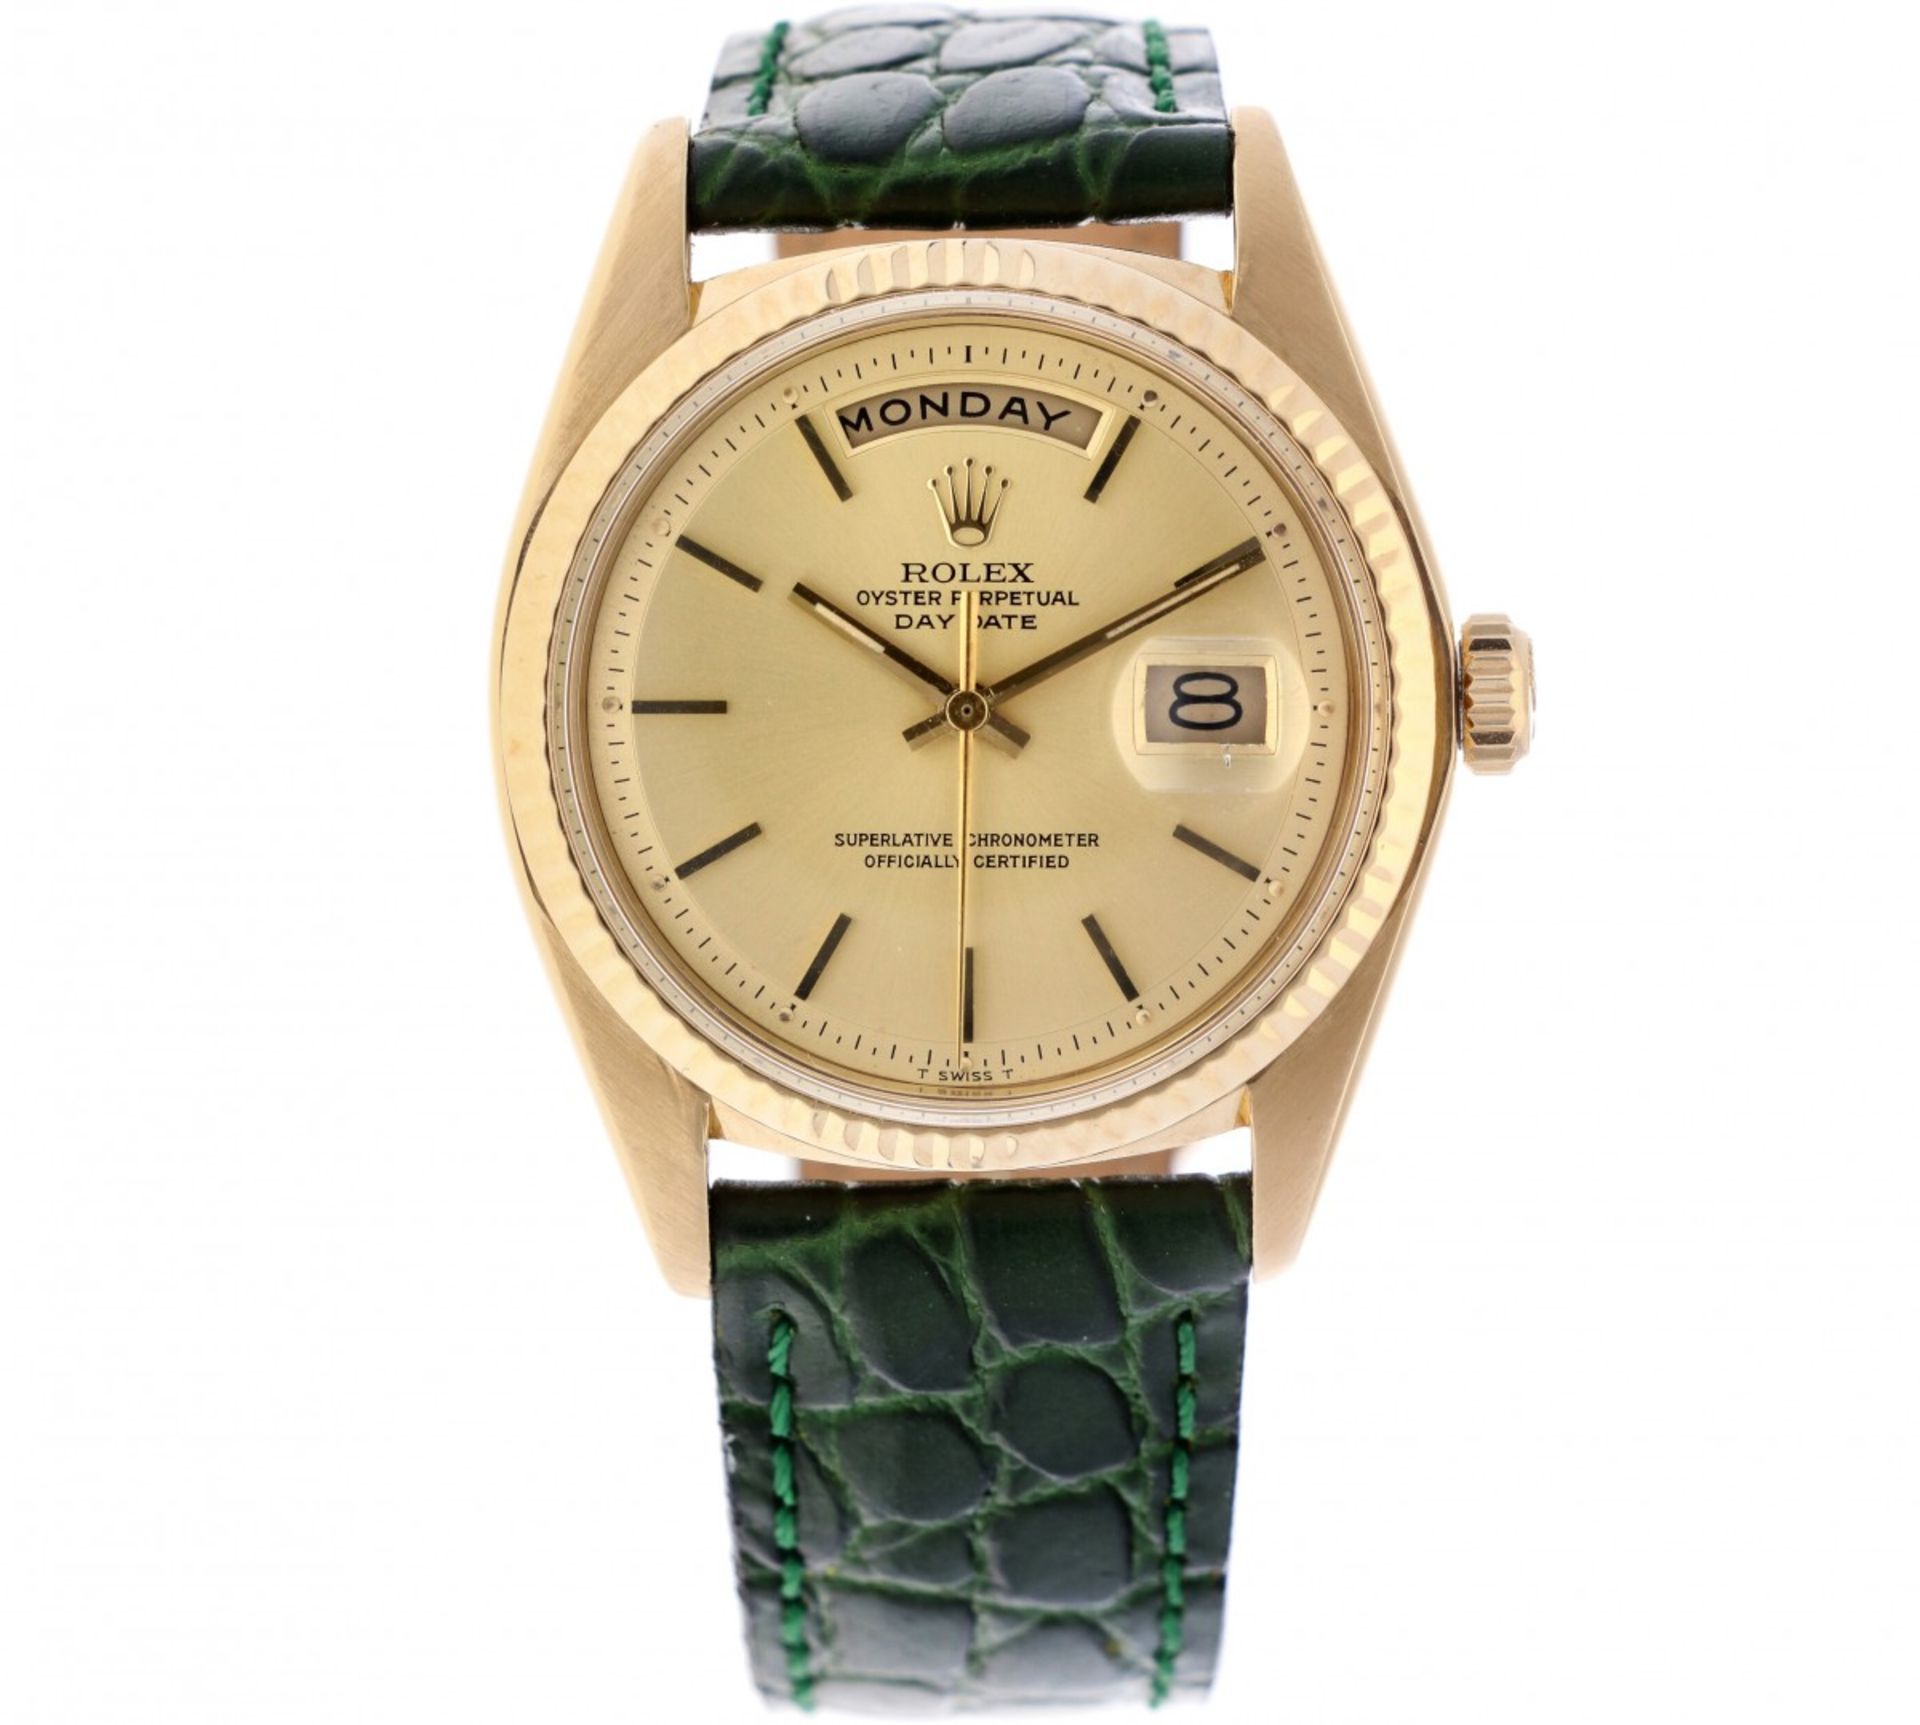 Rolex day date 1803 - Men's watch - ca. 1974